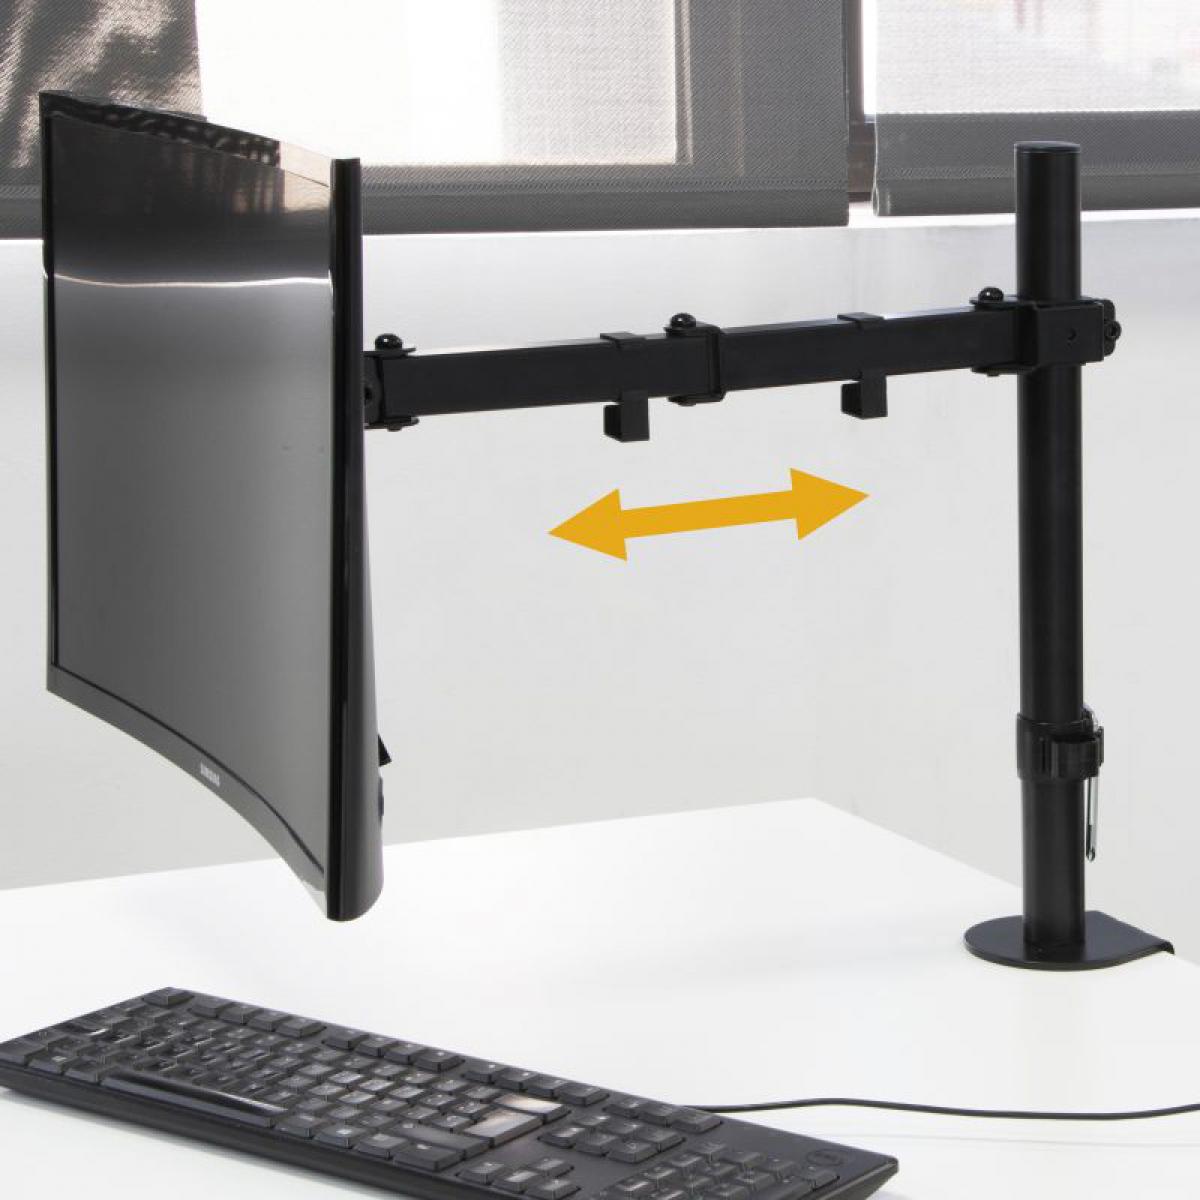 Inconnu - (1 Unite) Support ecran pc 13 à 32 pouces pour table, inclinaison  et rotatif à 360°, jusqu'à 8 kg, MAX VESA 75x75mm-100x100mm, acier, noir. -  Support et Bras - Rue du Commerce